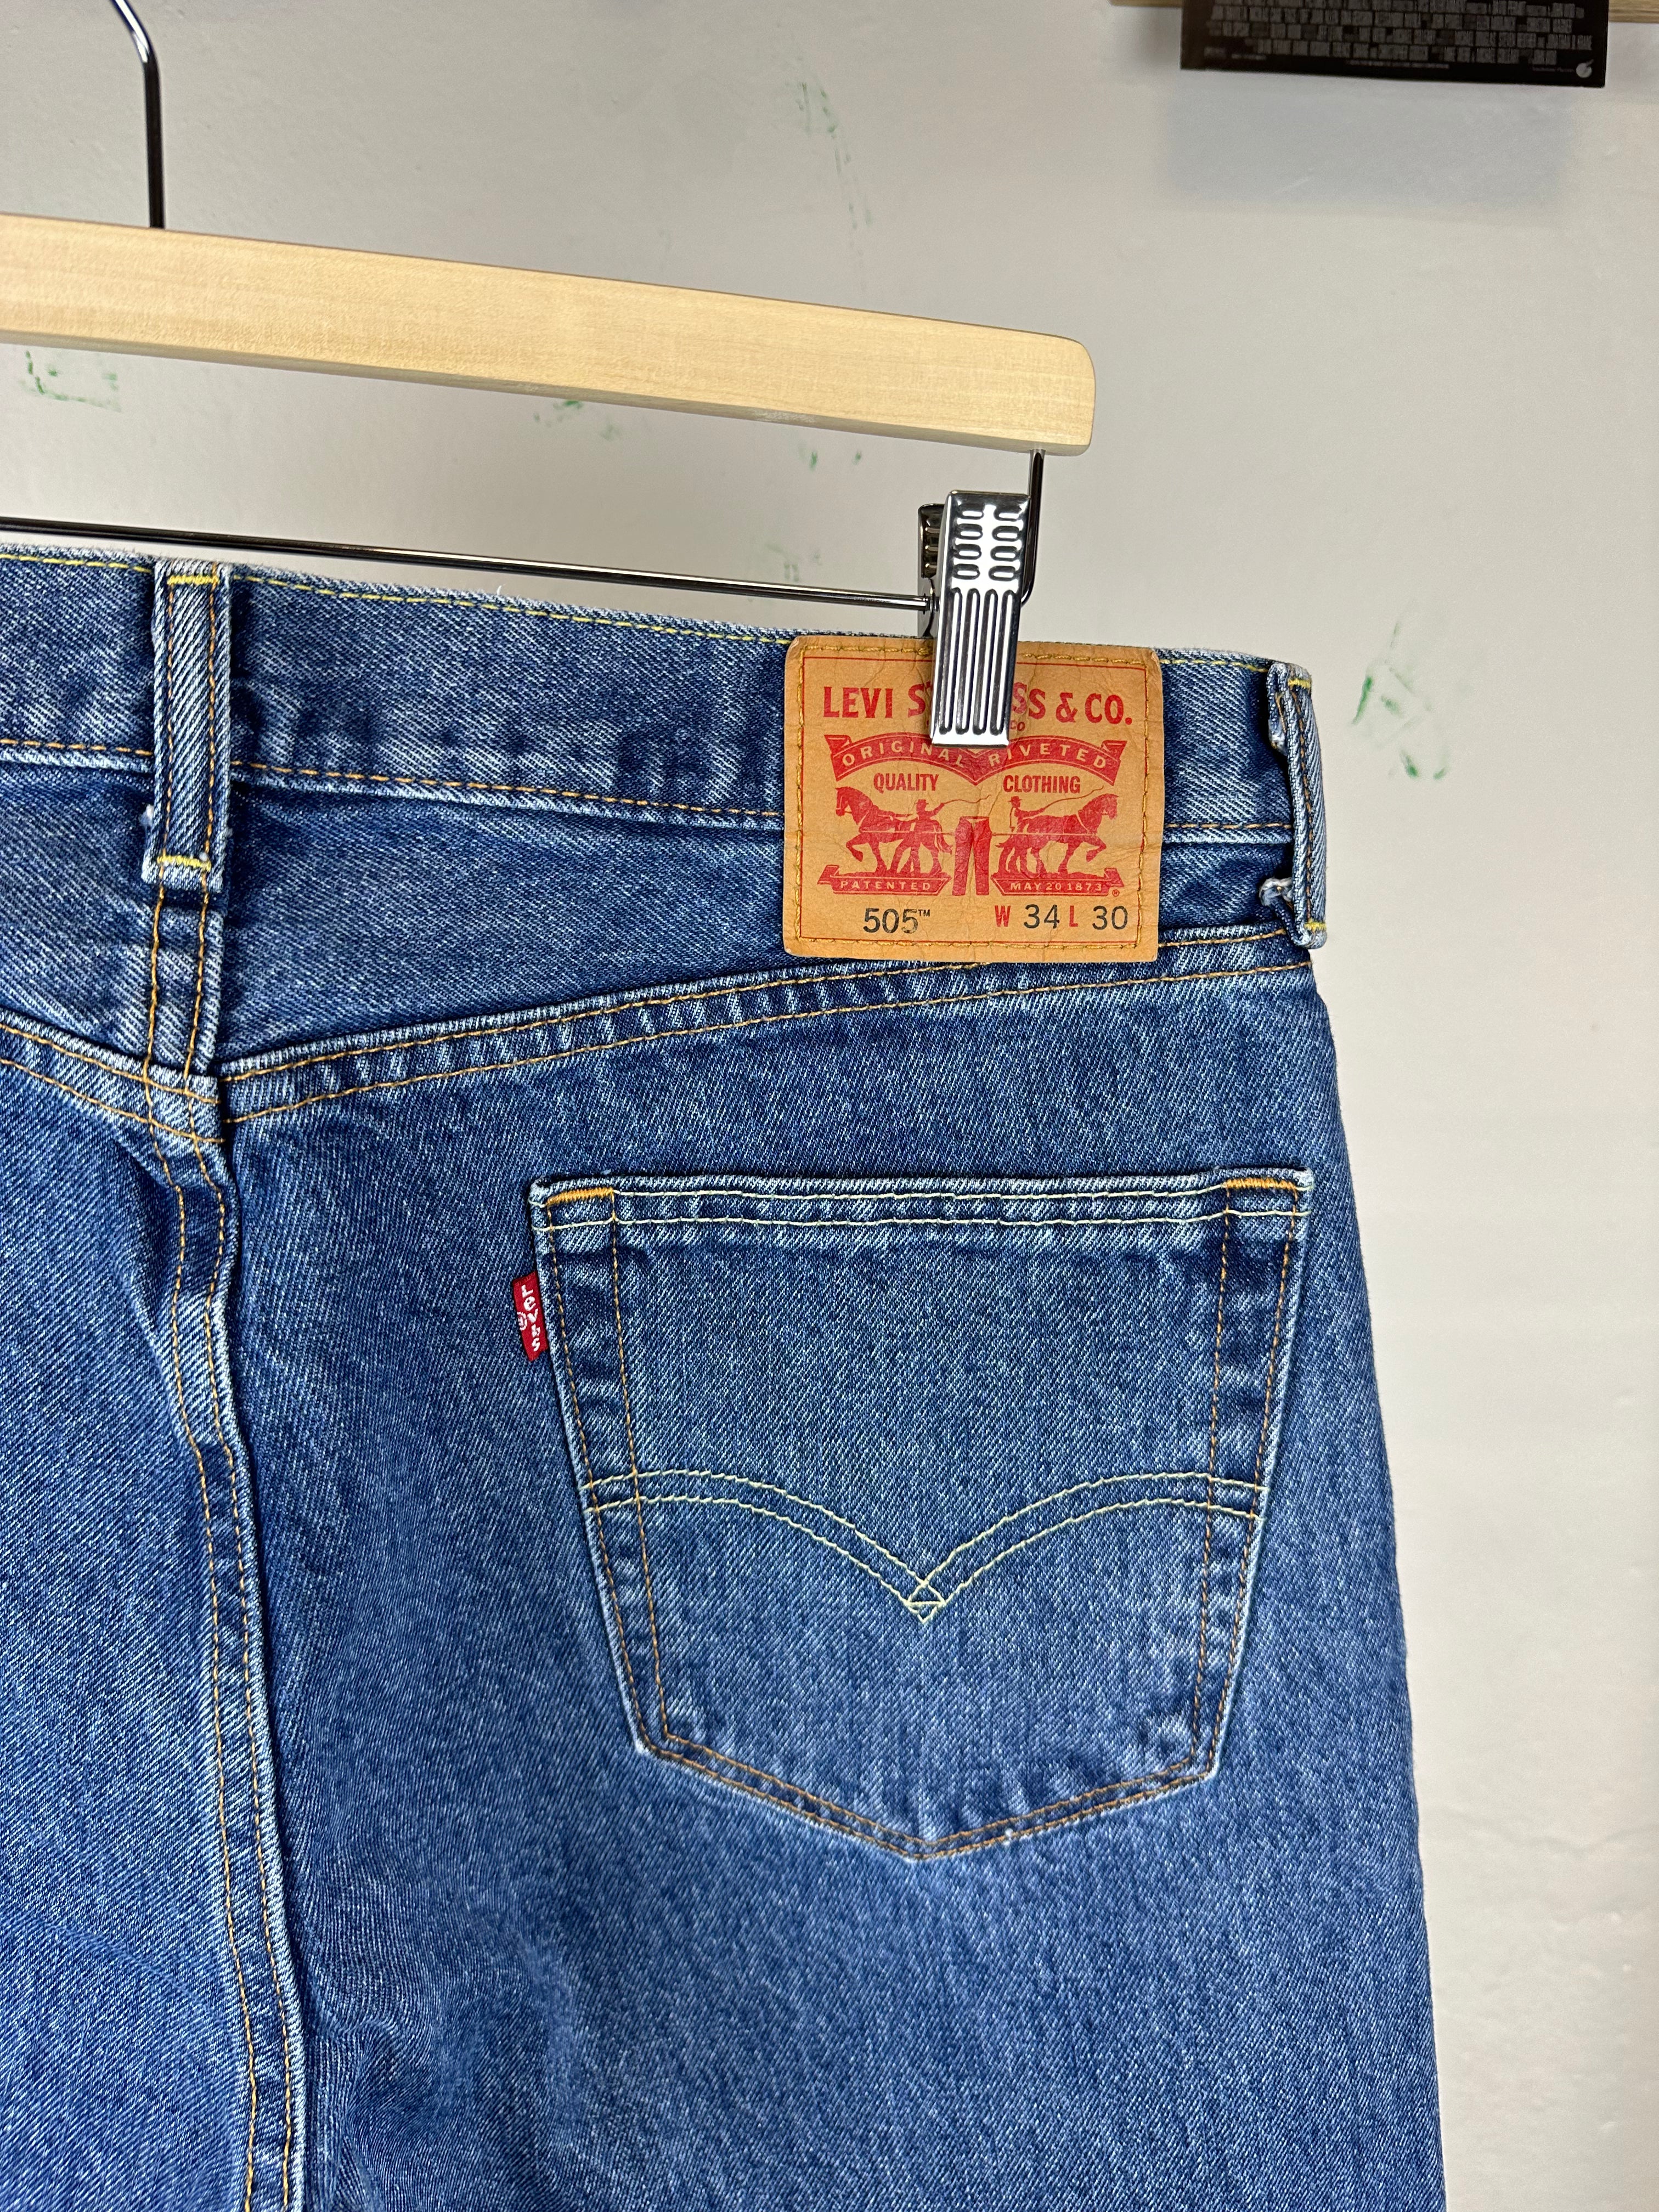 Vintage Levi's 505 Pants 34x30